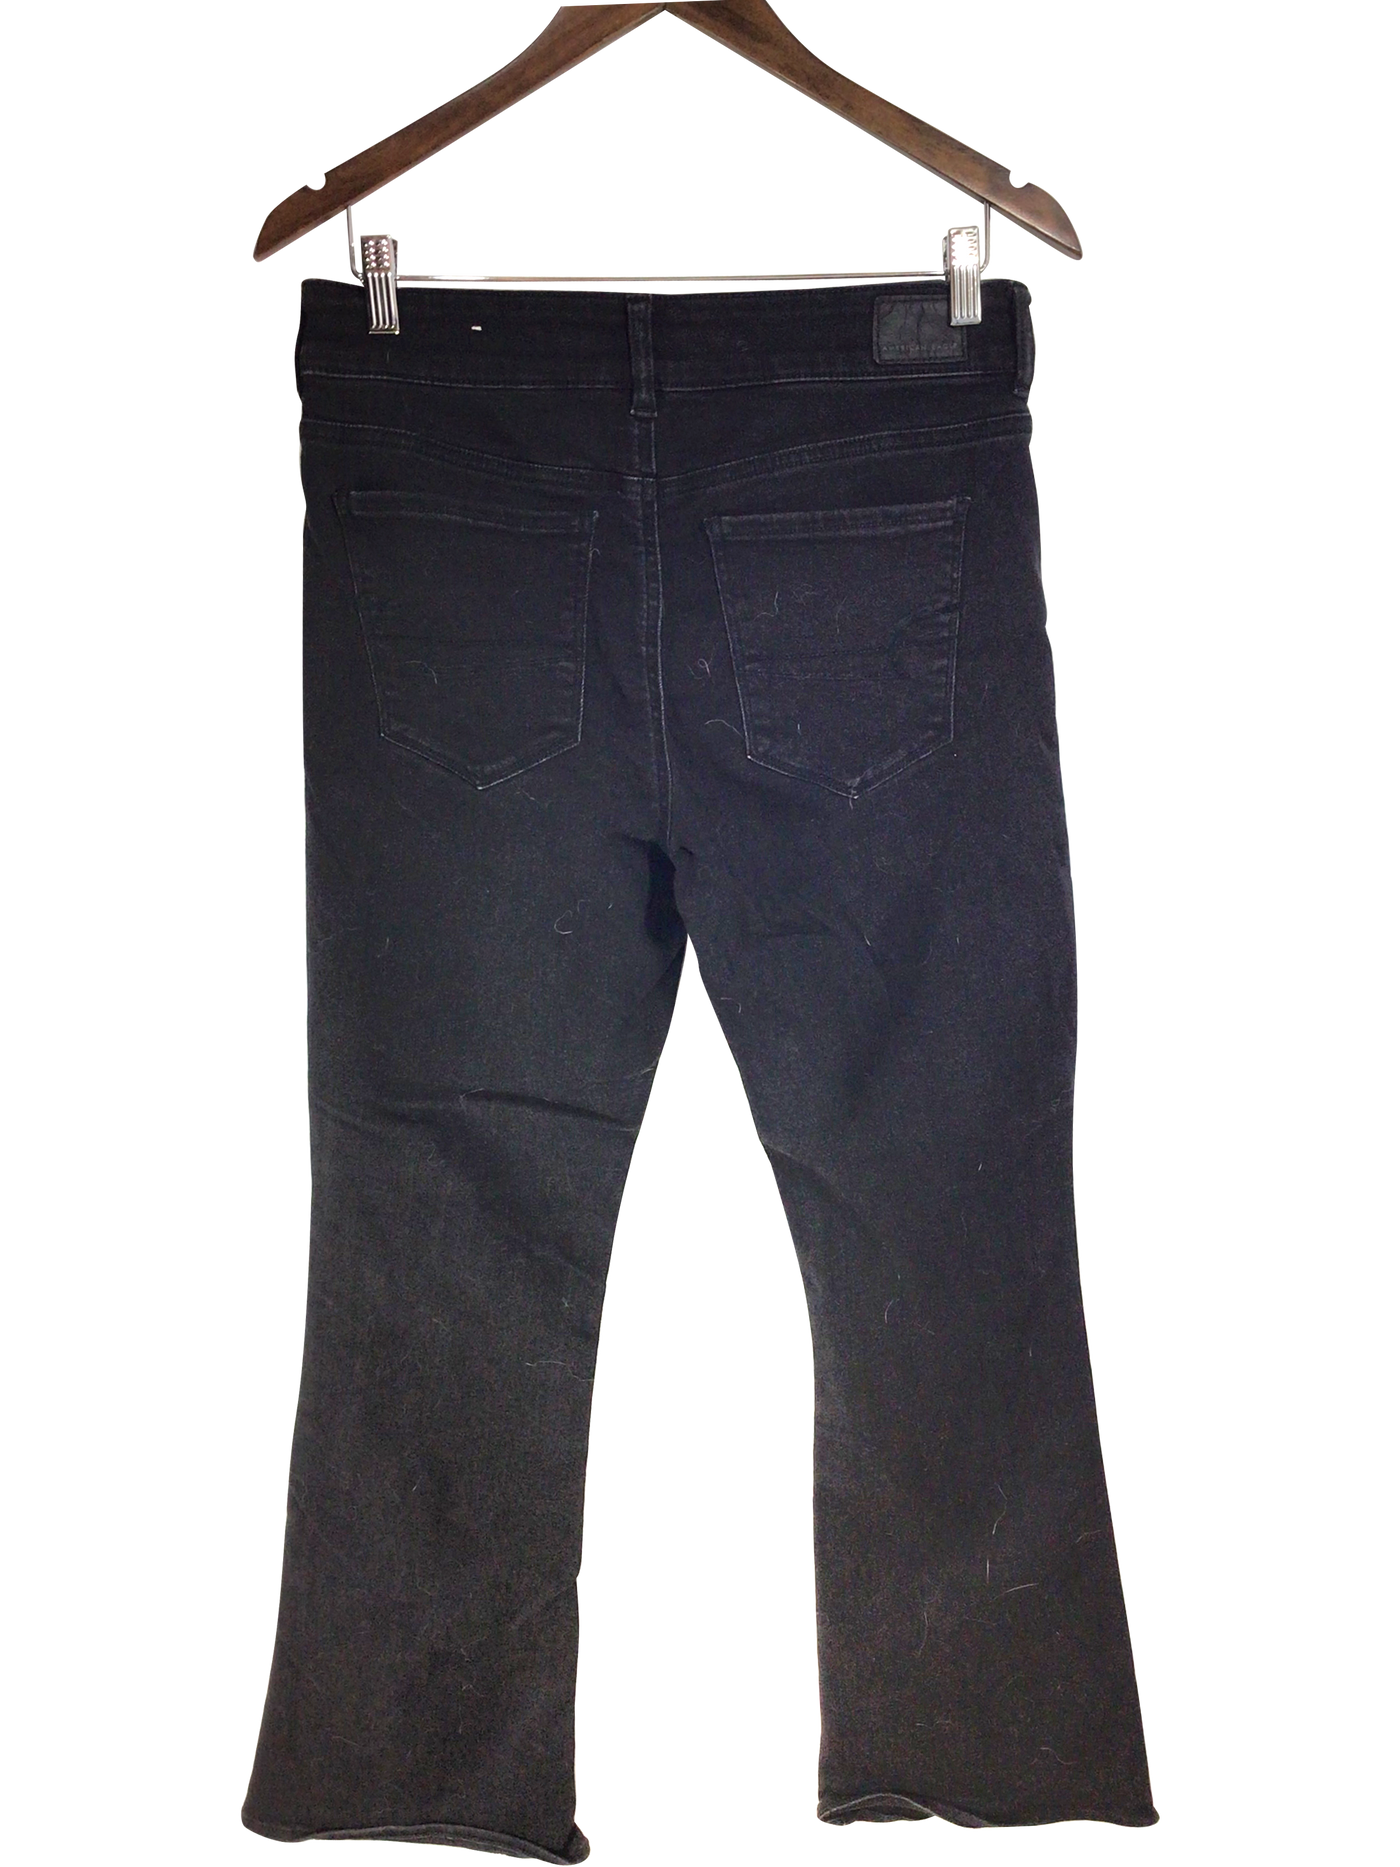 AMERICAN EAGLE Women Straight-Legged Jeans Regular fit in Black - Size 10 | 14.9 $ KOOP